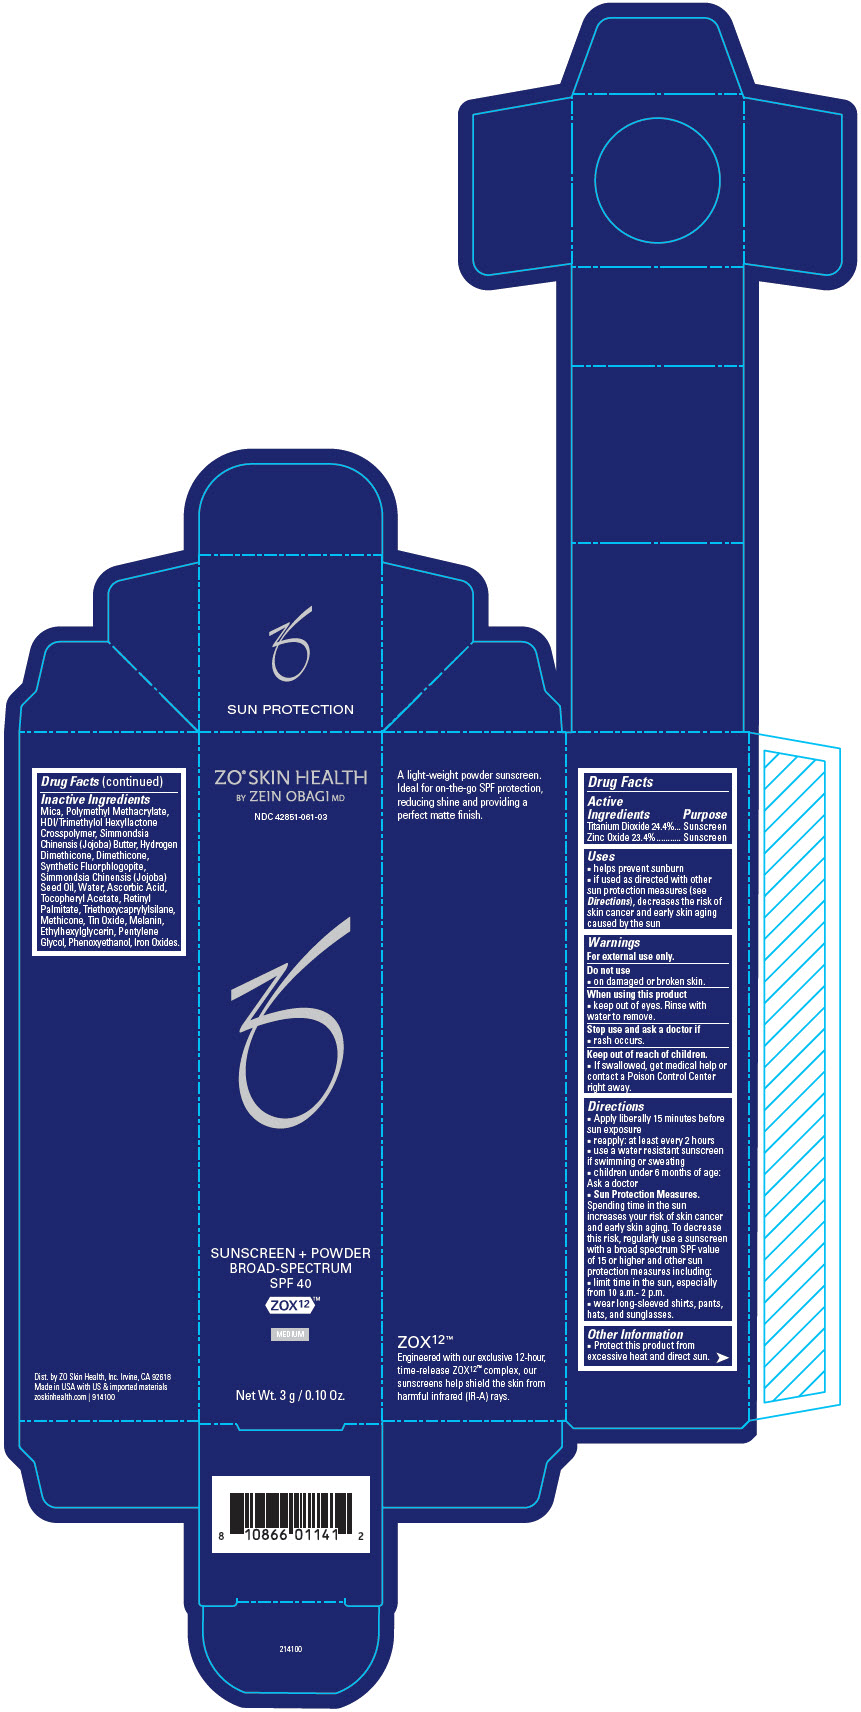 PRINCIPAL DISPLAY PANEL - 3 g Jar Carton